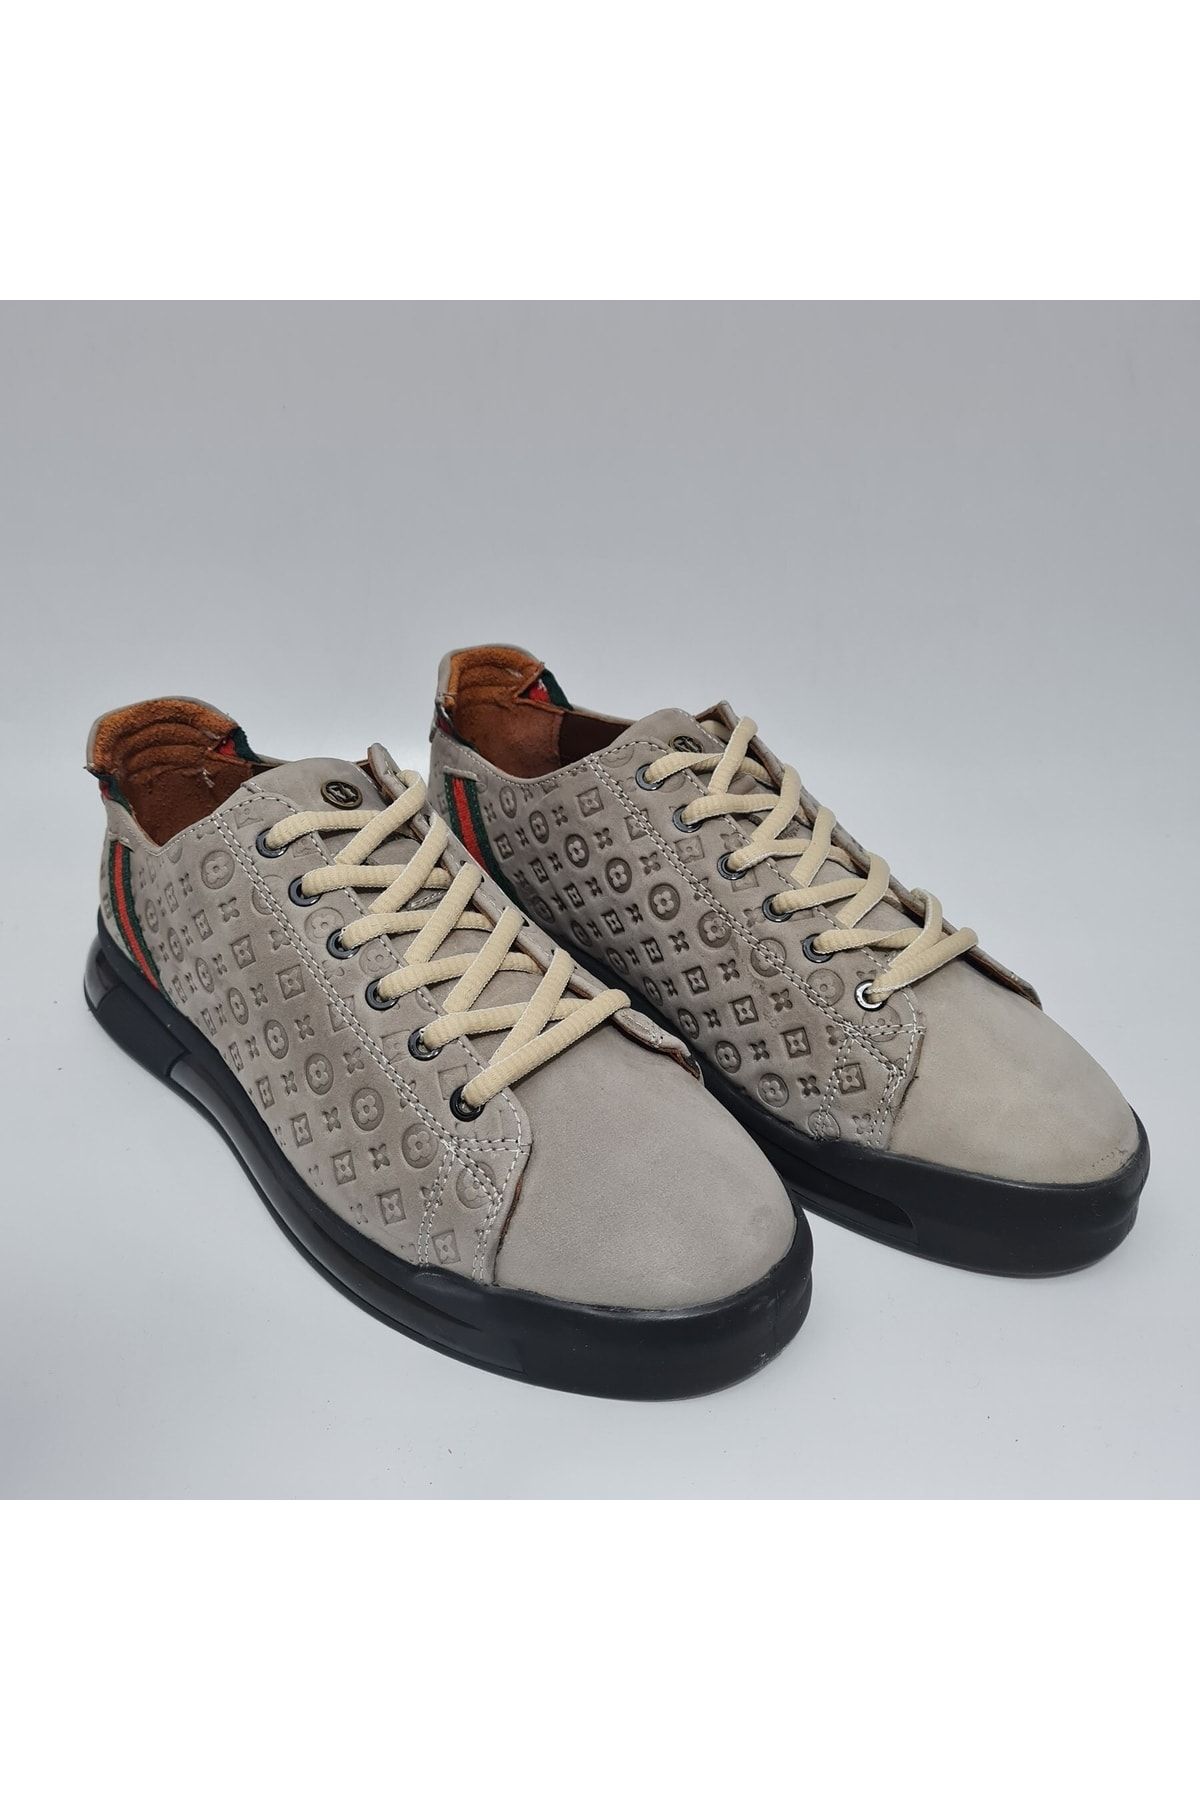 MARCOMEN Yumuşak Hakiki/gerçek Deri Bağcıklı Sneaker Spor Günlük Ayakkabı 17276